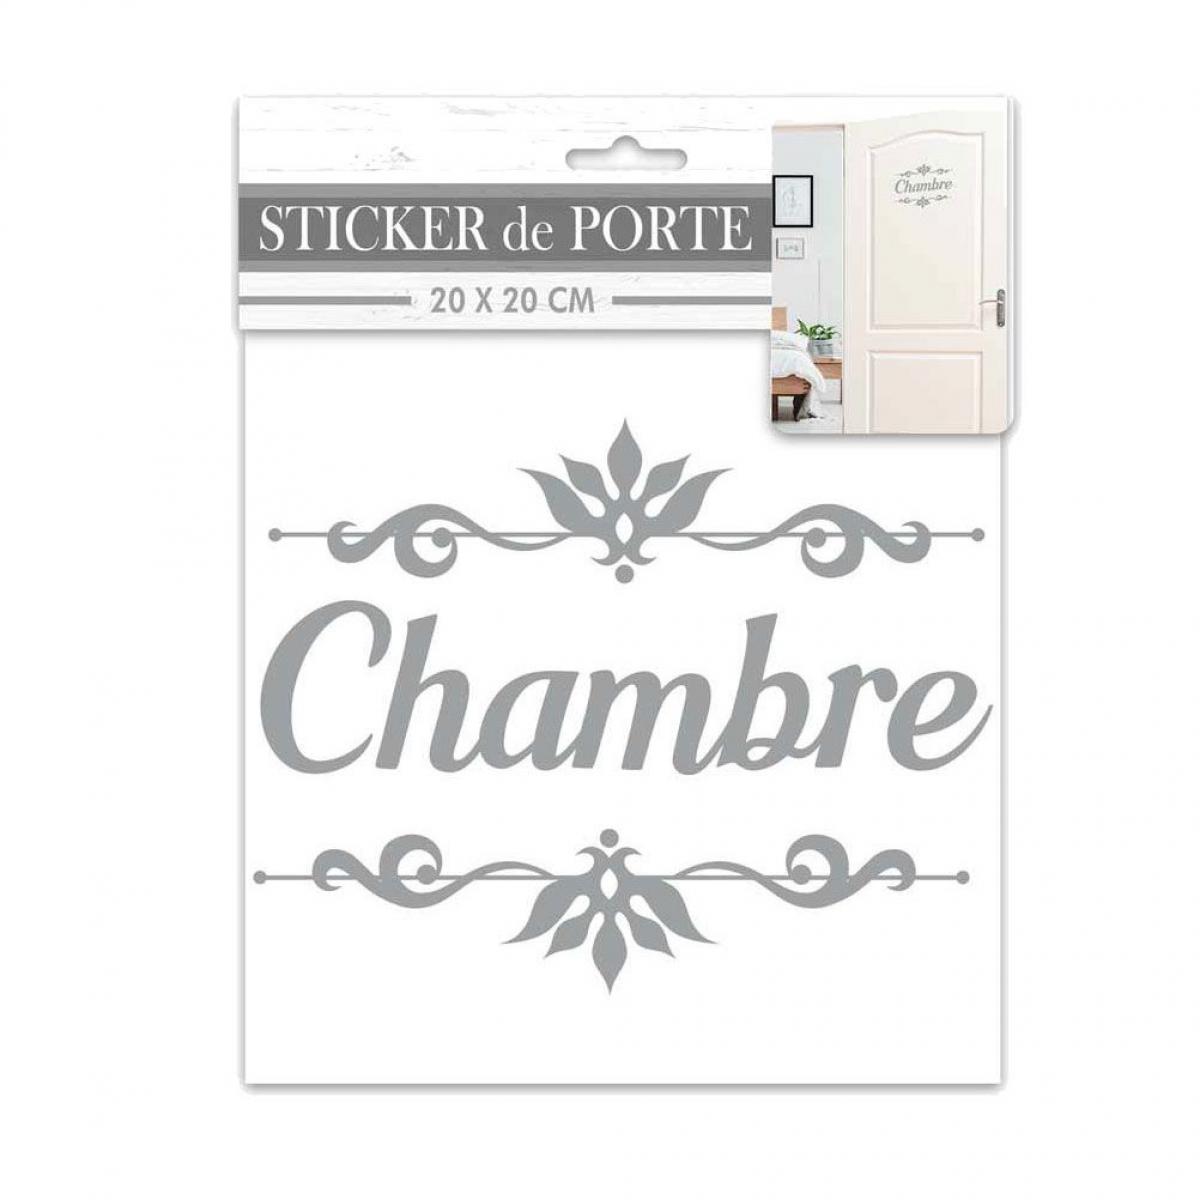 Sudtrading - Sticker décoratif de porte CHAMBRE - Affiches, posters